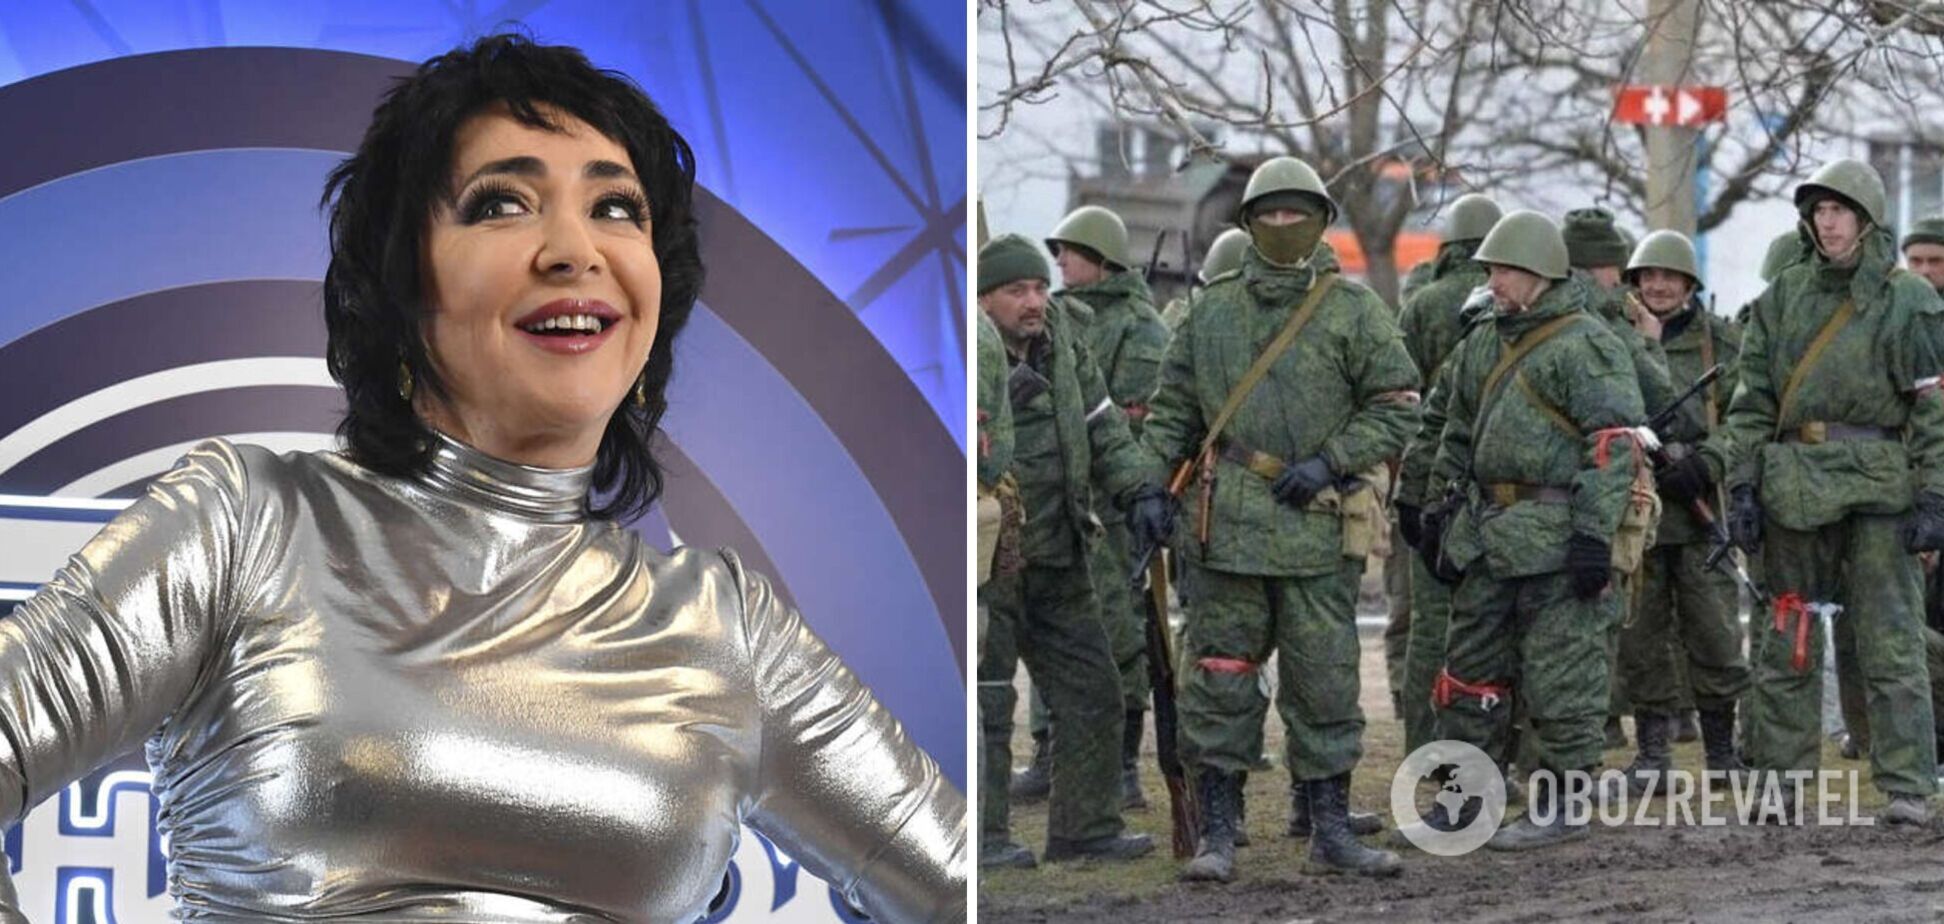 Уроженка Украины Лолита Милявская назвала себя 'военнообязанной' и осудила панику из-за мобилизации в России